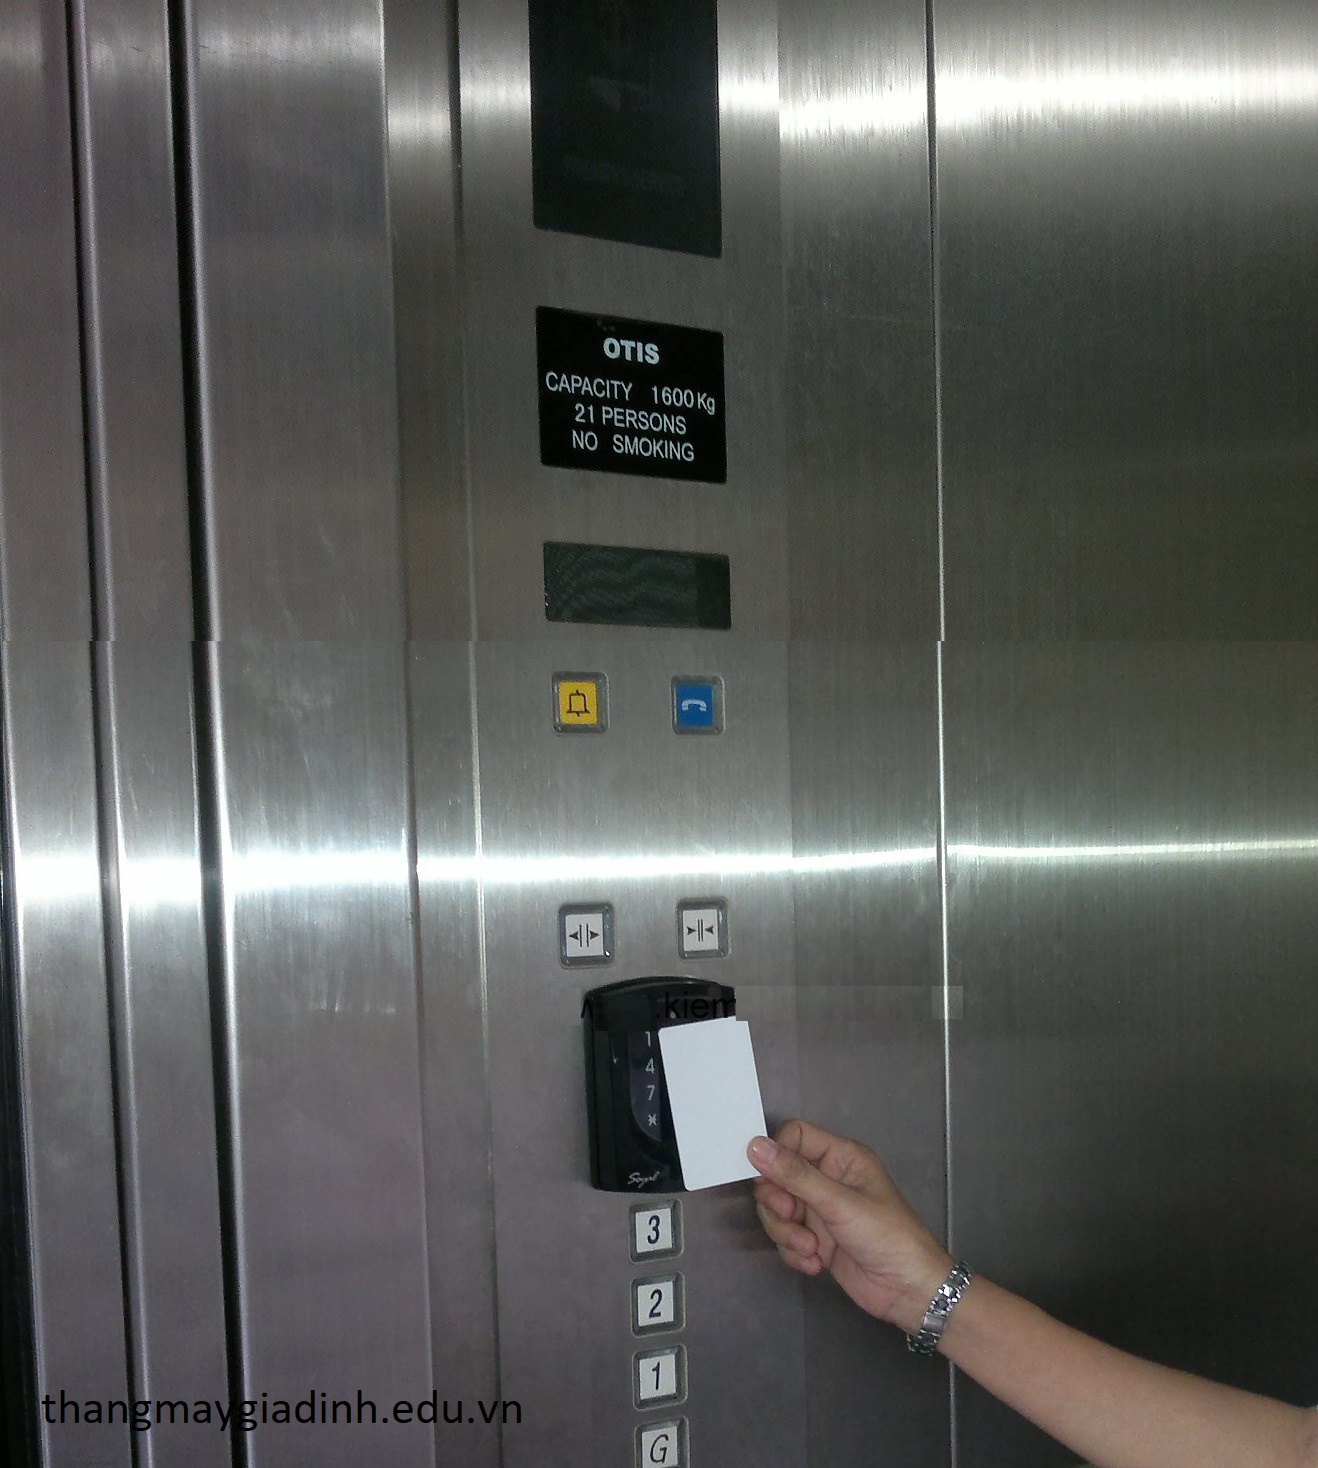 Sử dụng thẻ từ thang máy gia đình